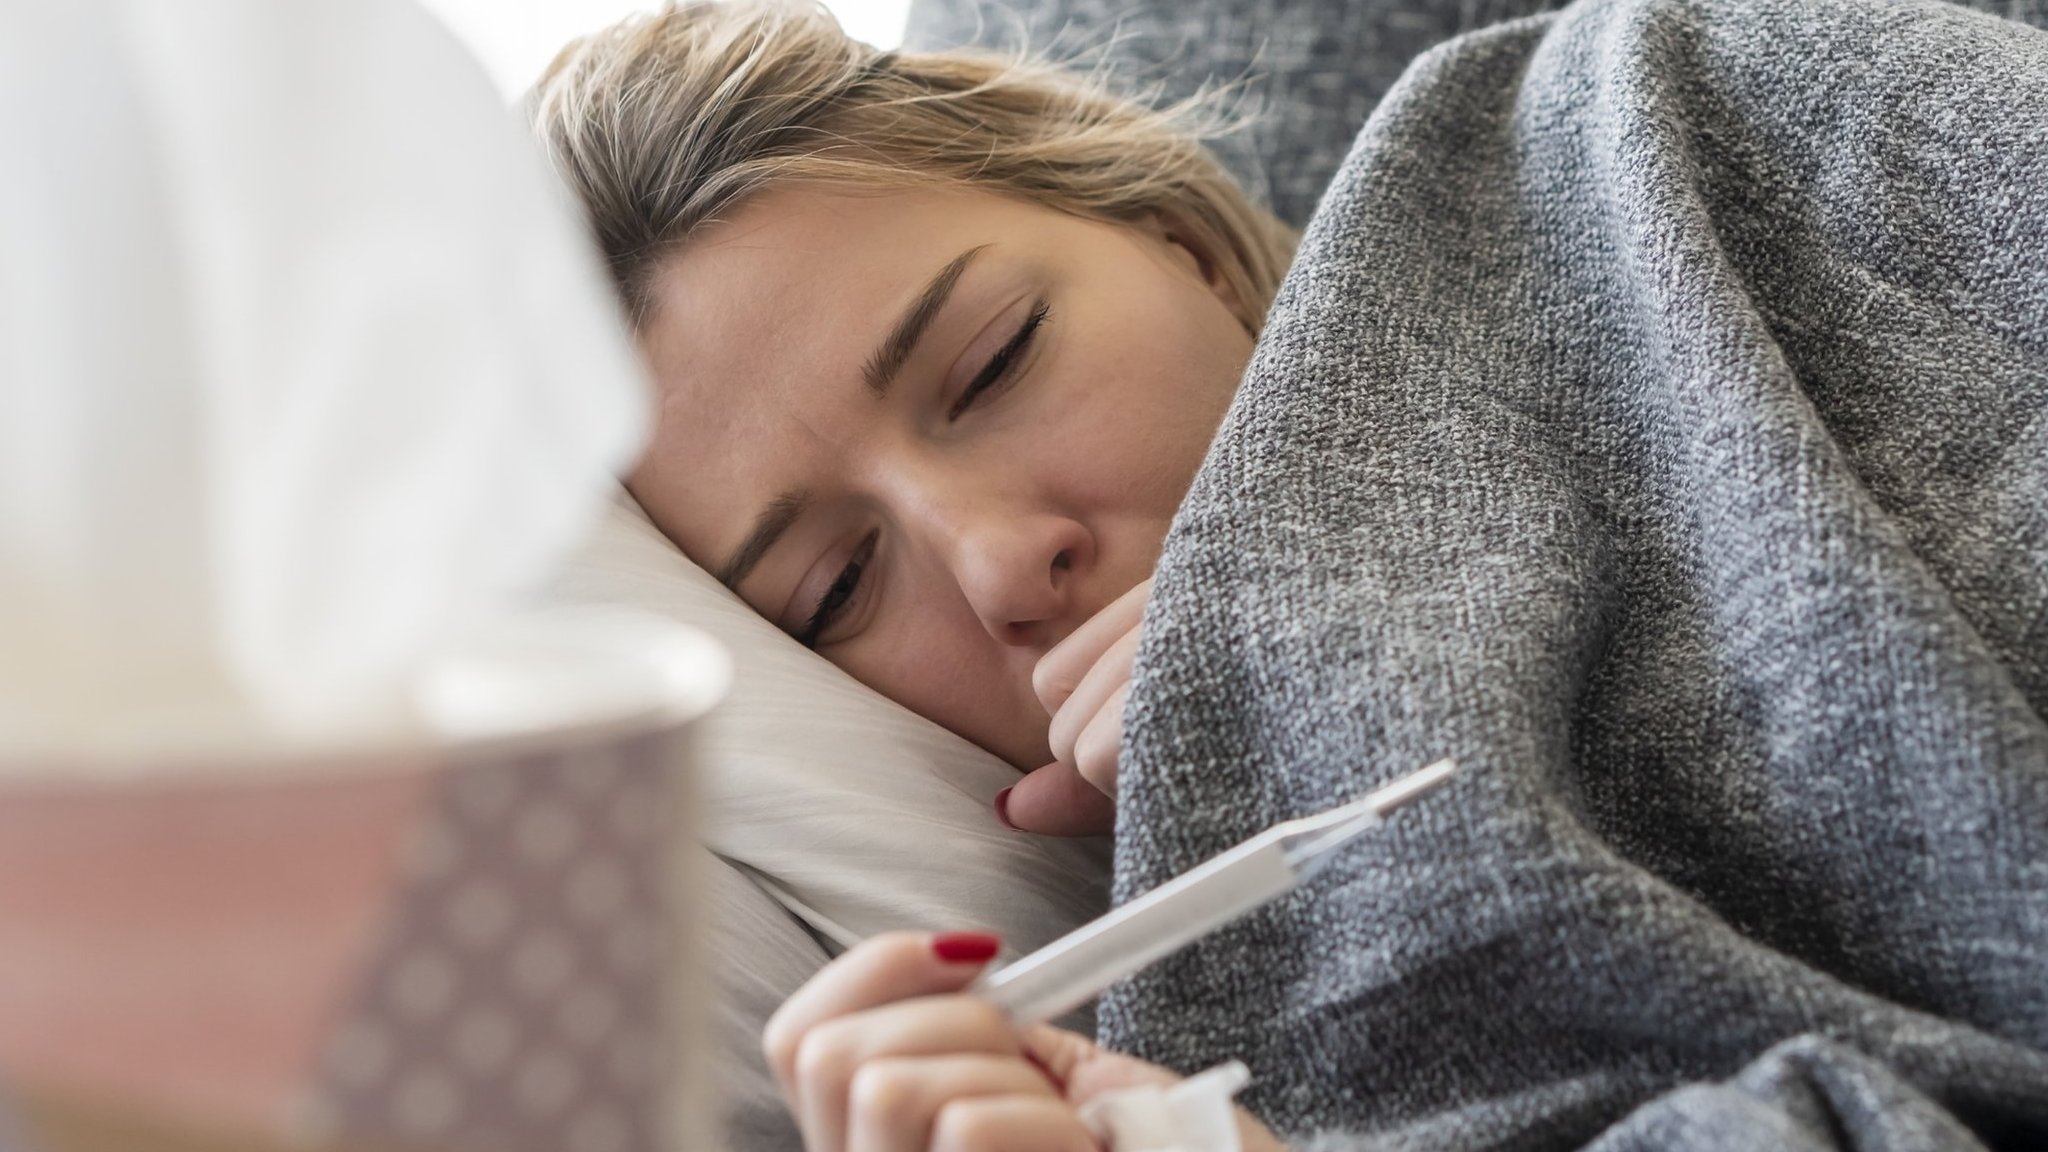 Como diferenciar covid da gripe comum, apesar dos sintomas cada vez mais parecidos